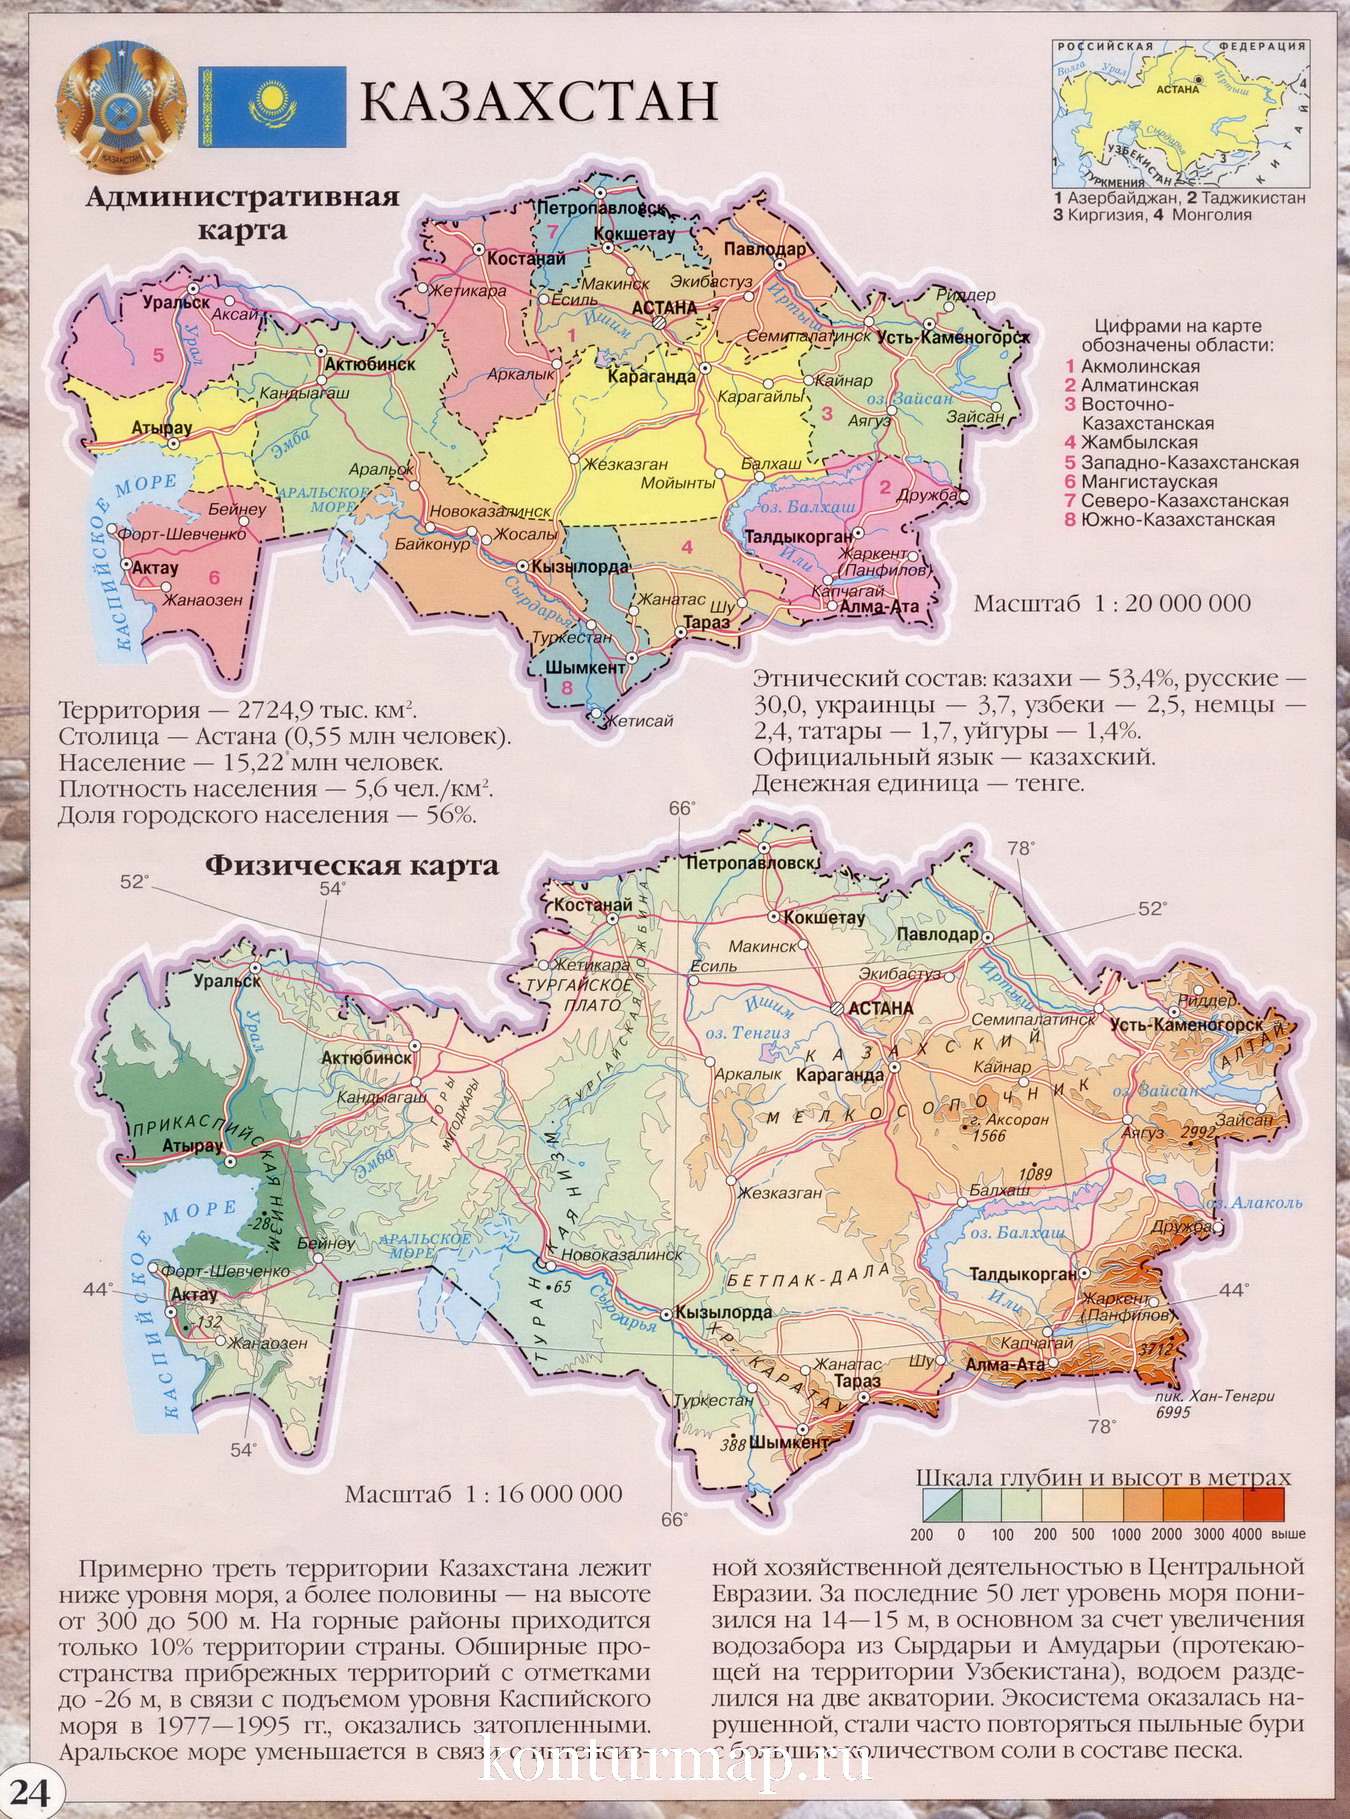 План характеристики страны белоруссия 7 класс